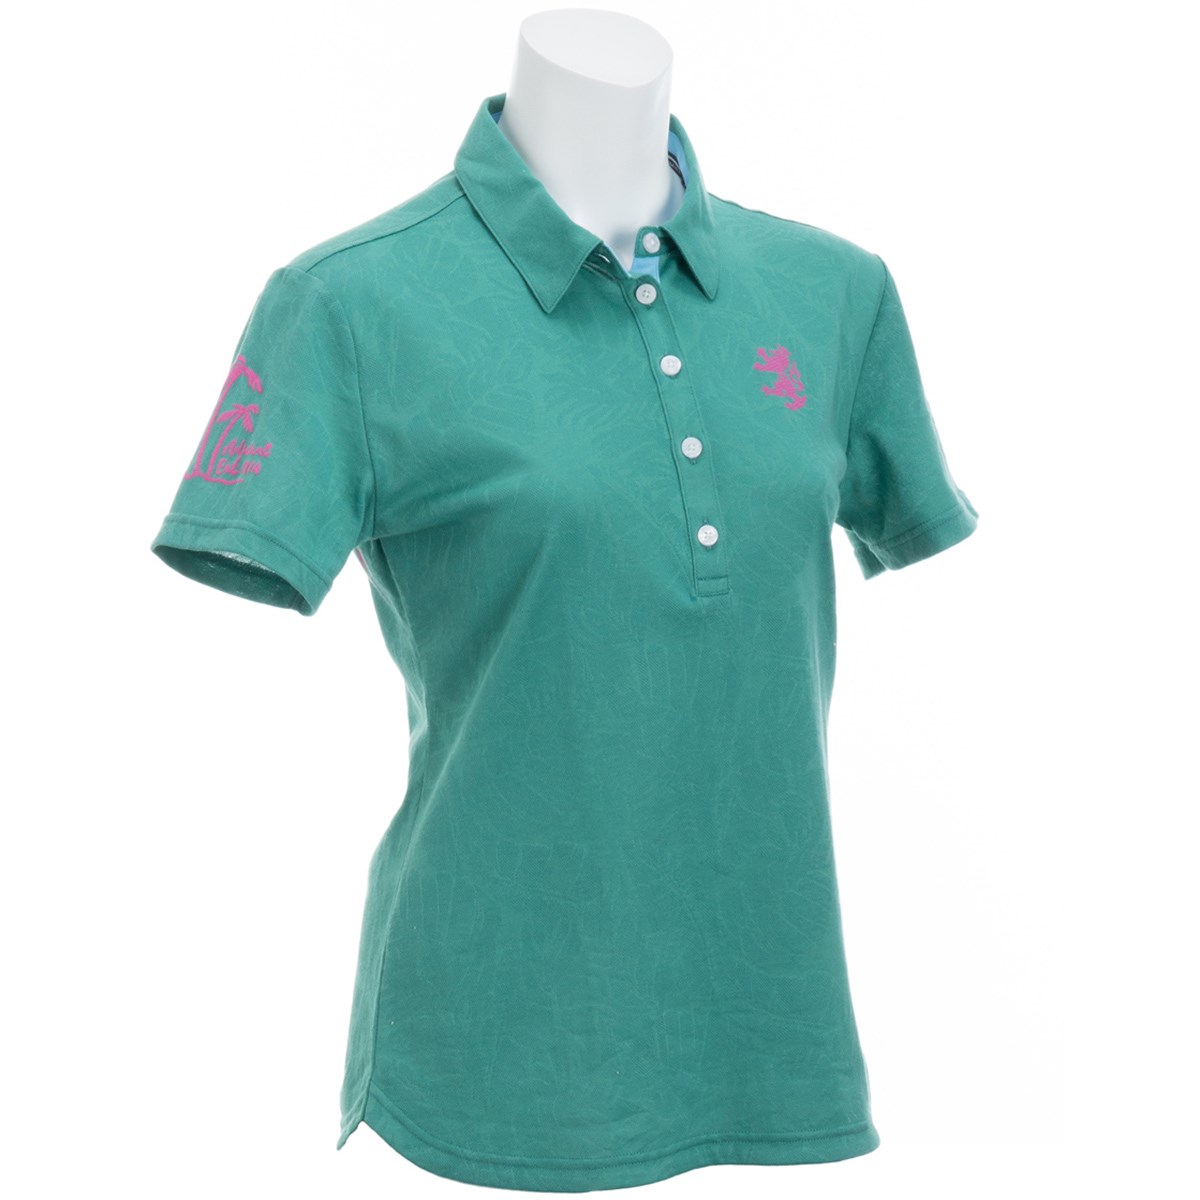  [アウトレット] [在庫限りのお買い得商品] アドミラル ボタニカル 半袖ポロシャツ ゴルフウェア